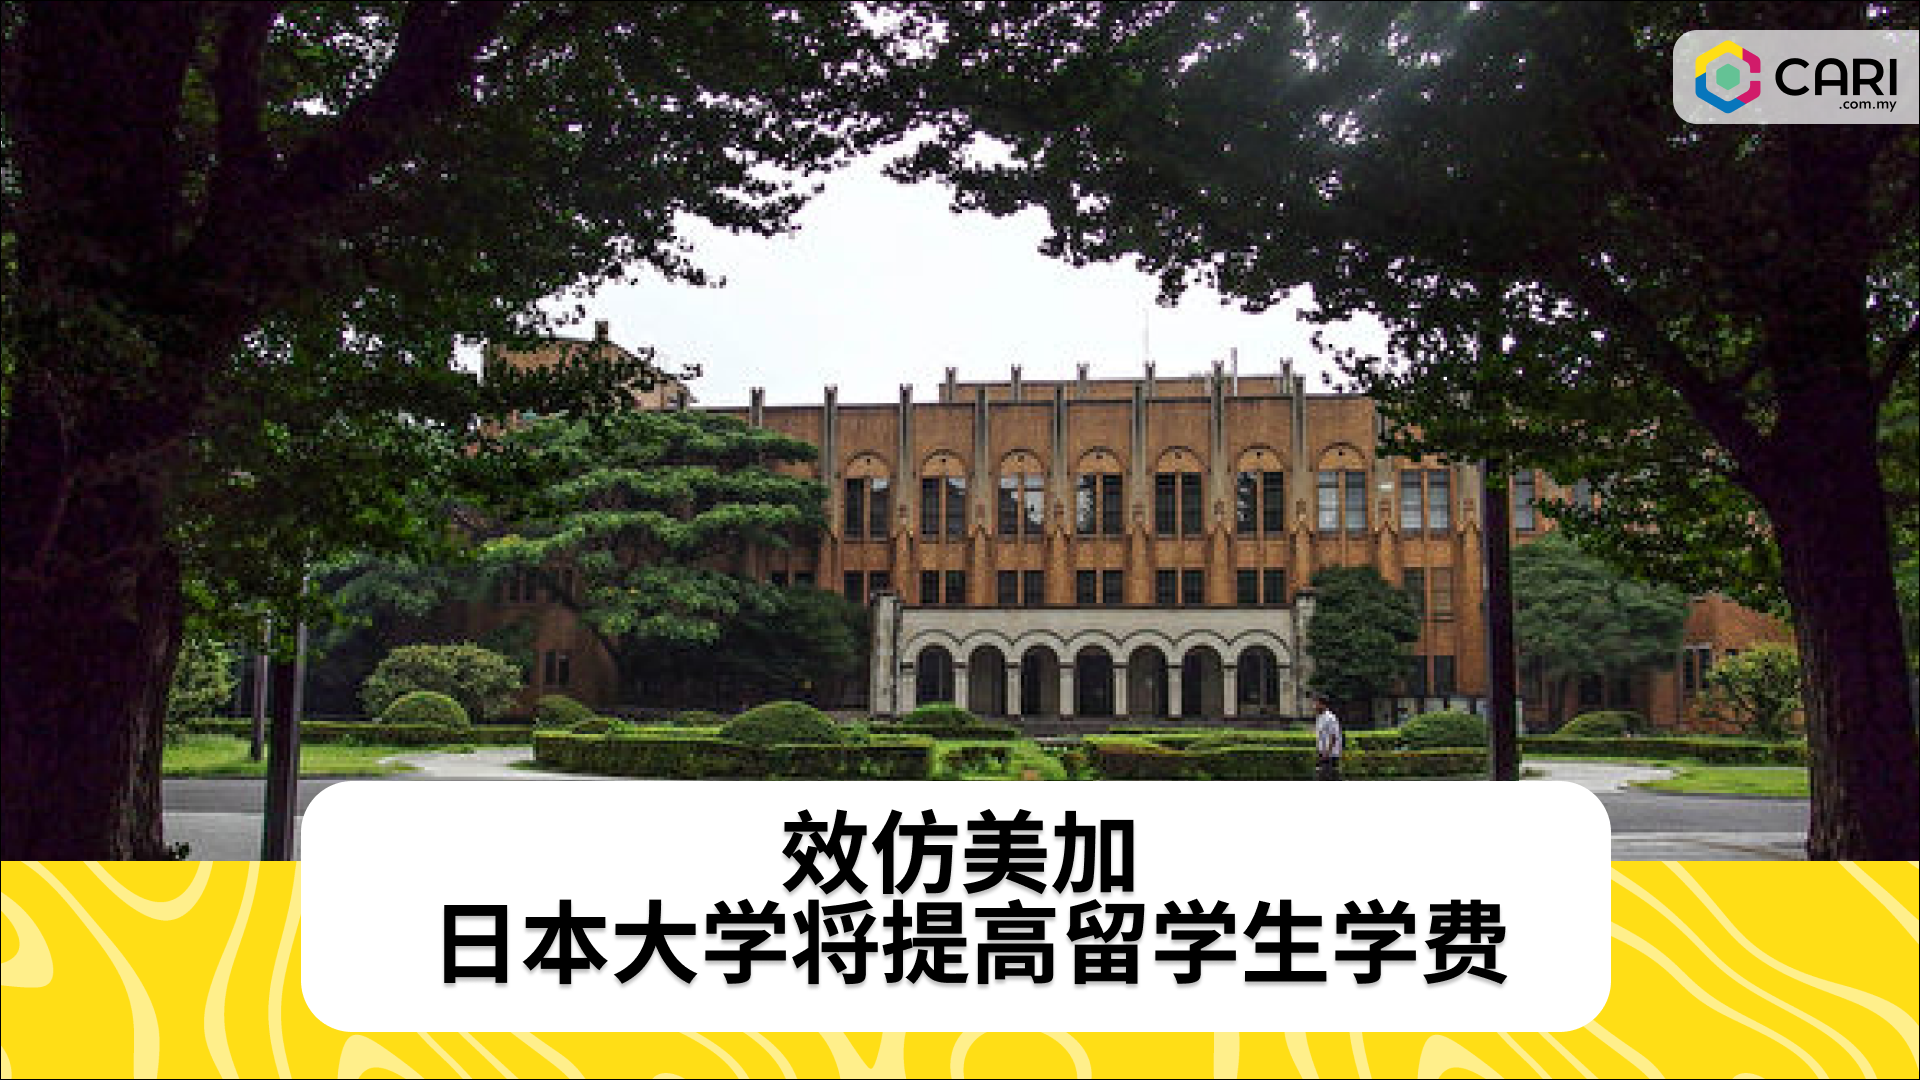 效仿美加 日本大学将提高留学生学费